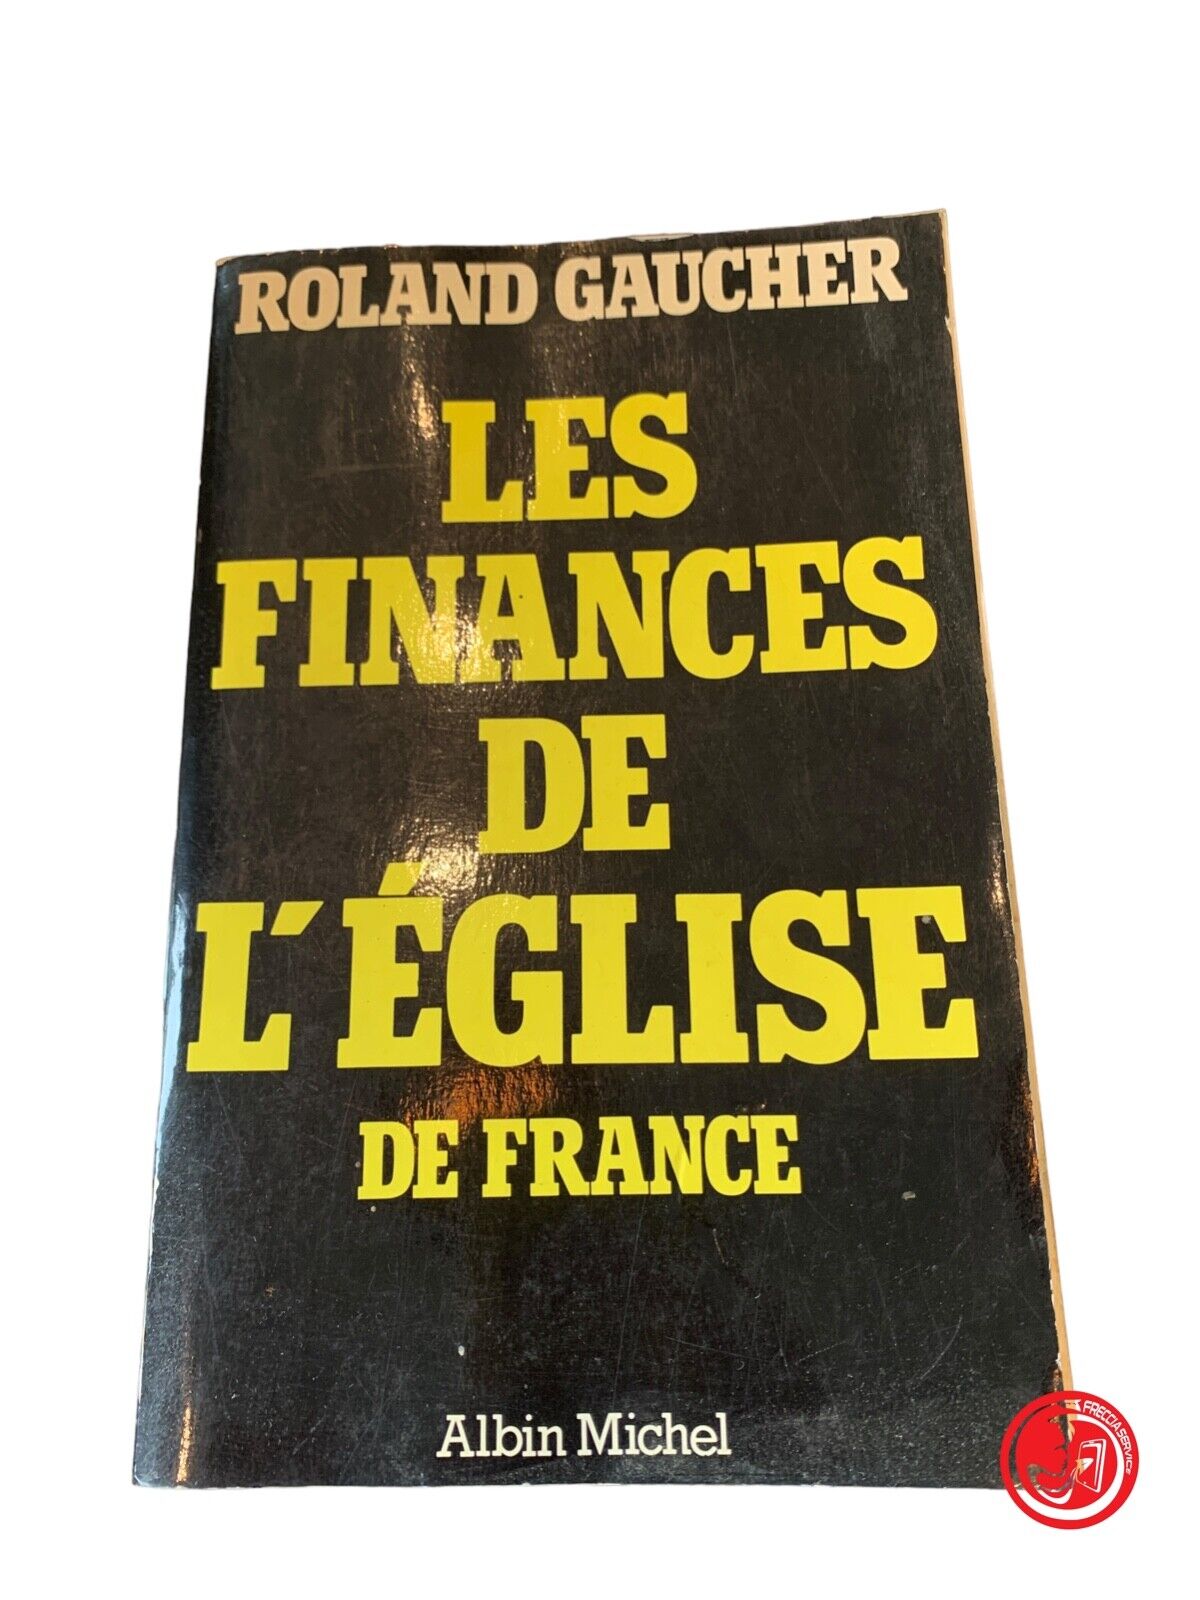 Les Finances de L'église de France - Roland Gaucher - Albin Michel 1981